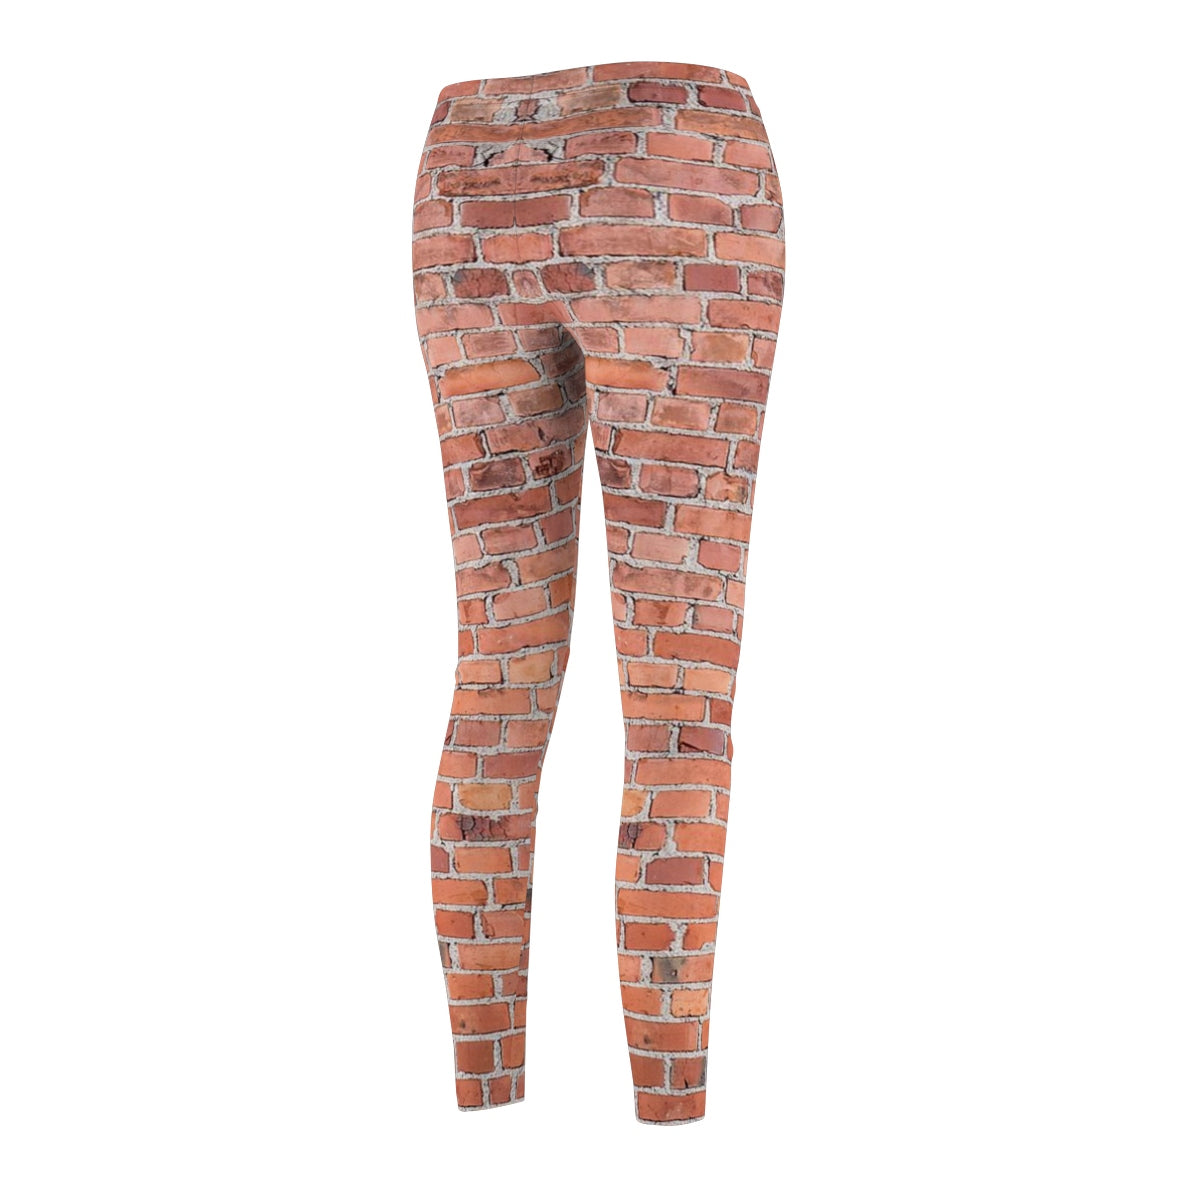 Casual Leggings - Brick Print - Aardvark Tees - Tees that Please